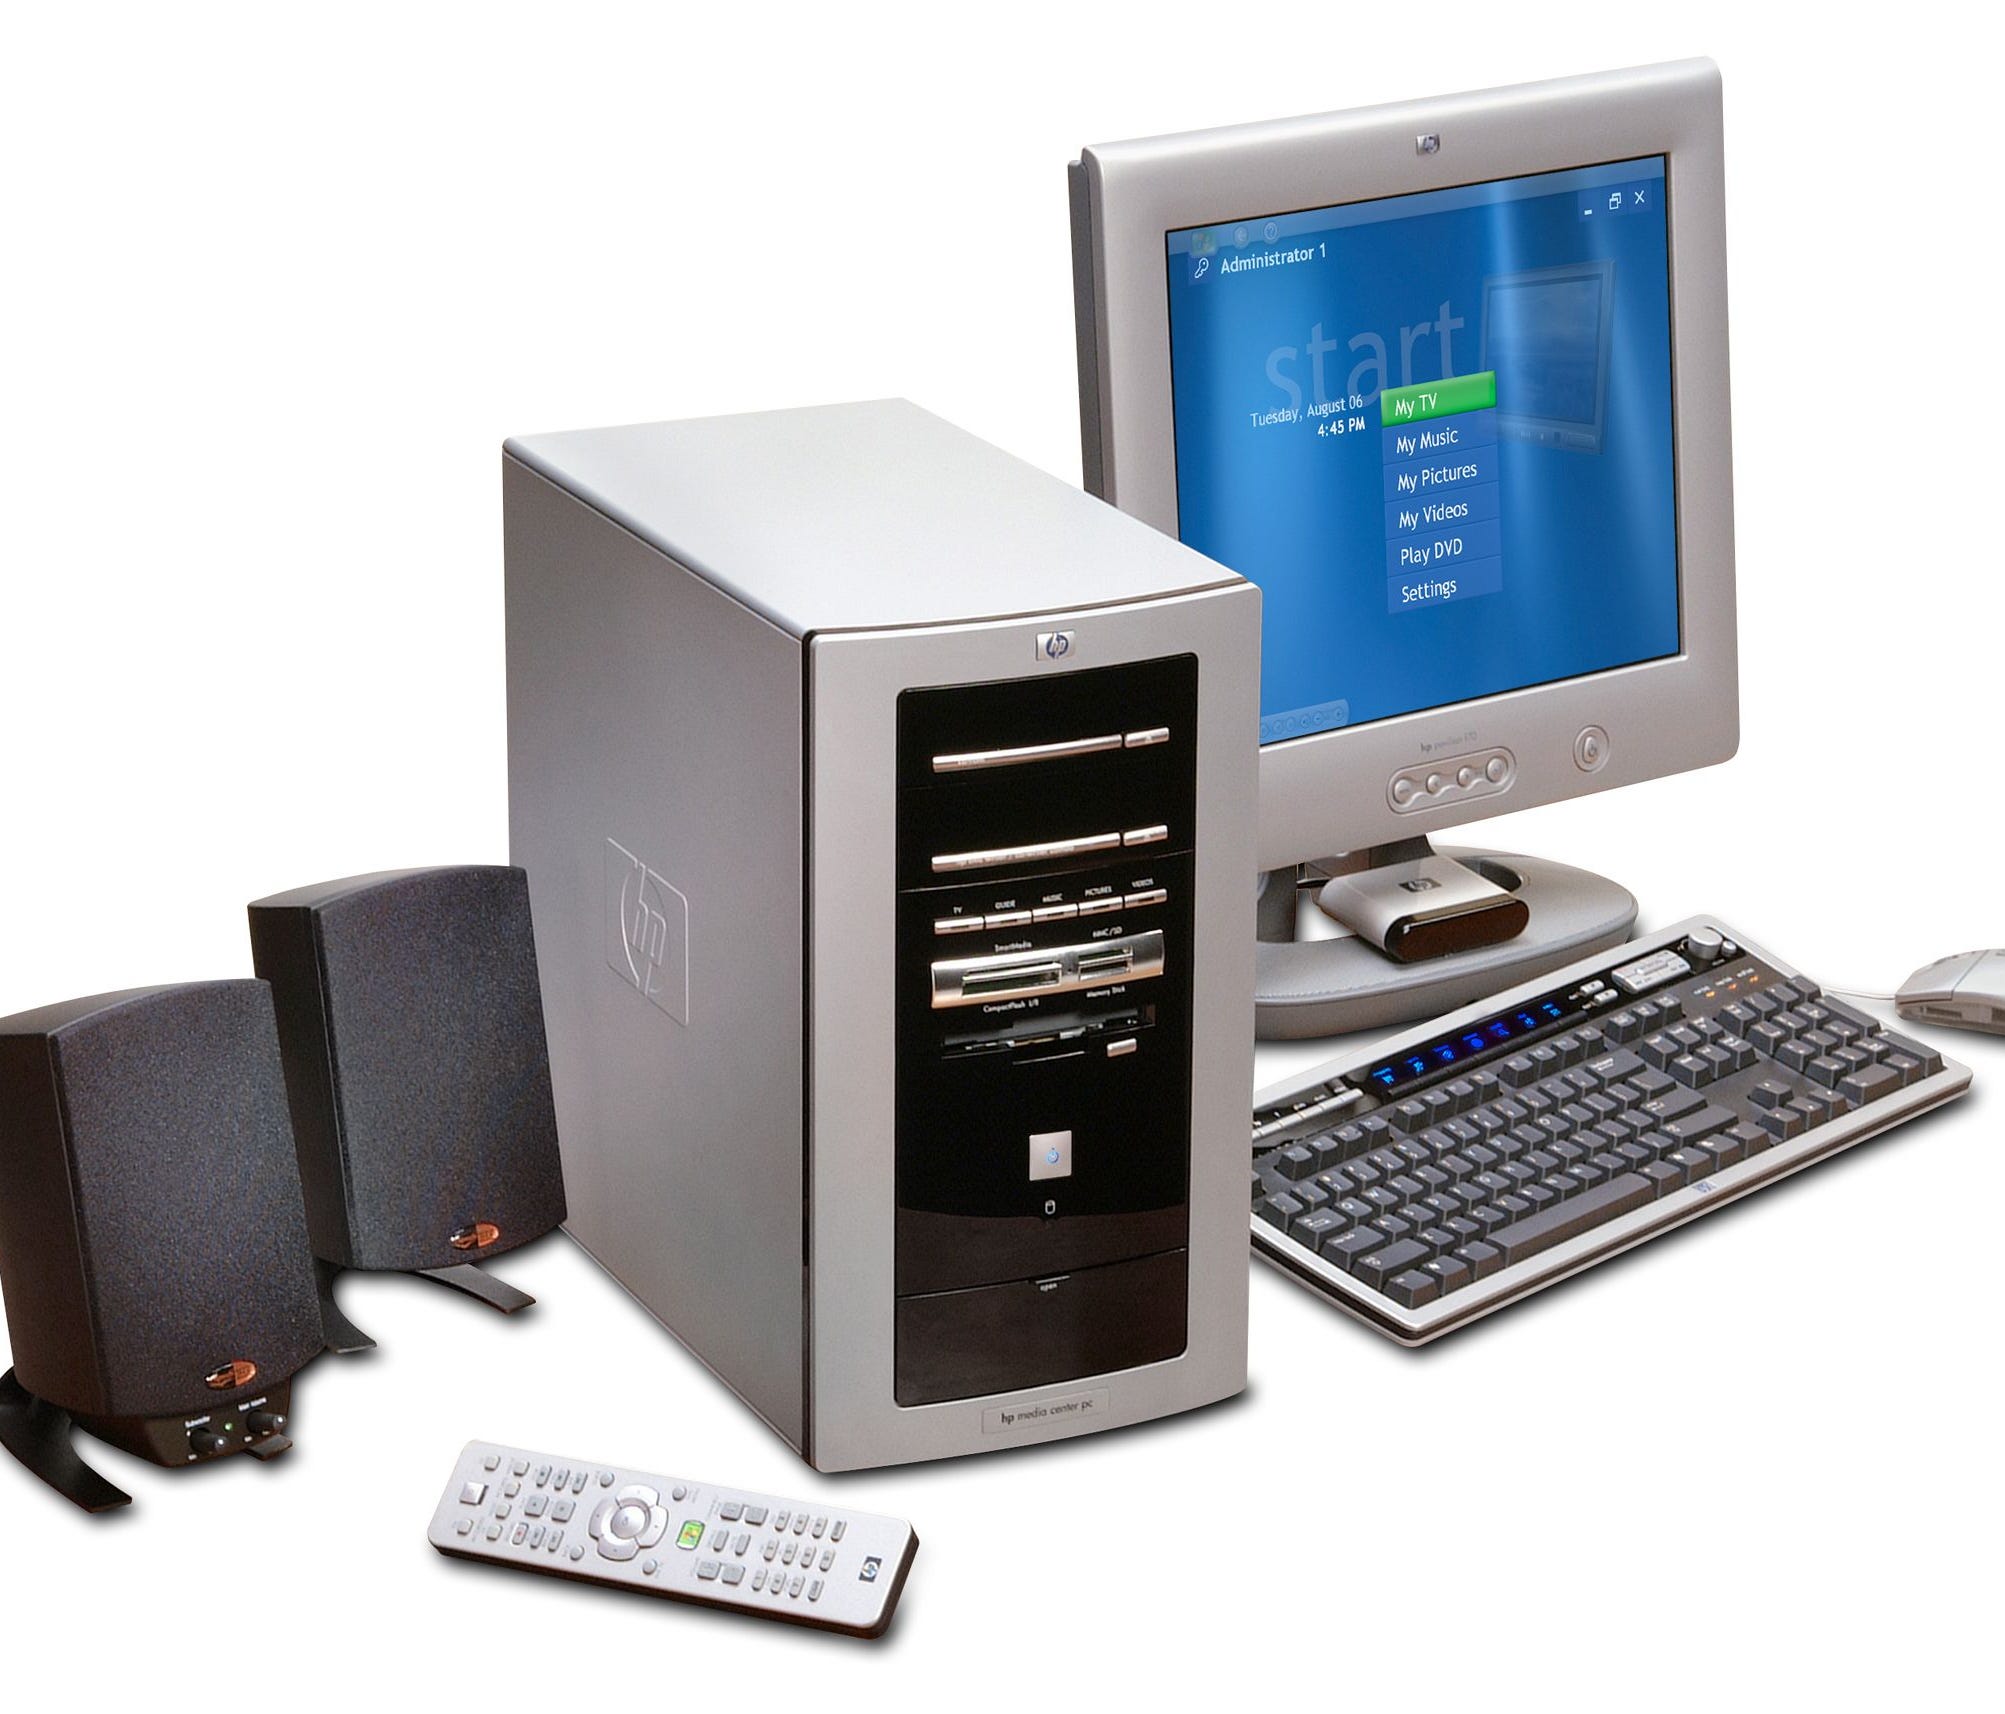 An HP computer running Windows XP from 2002.